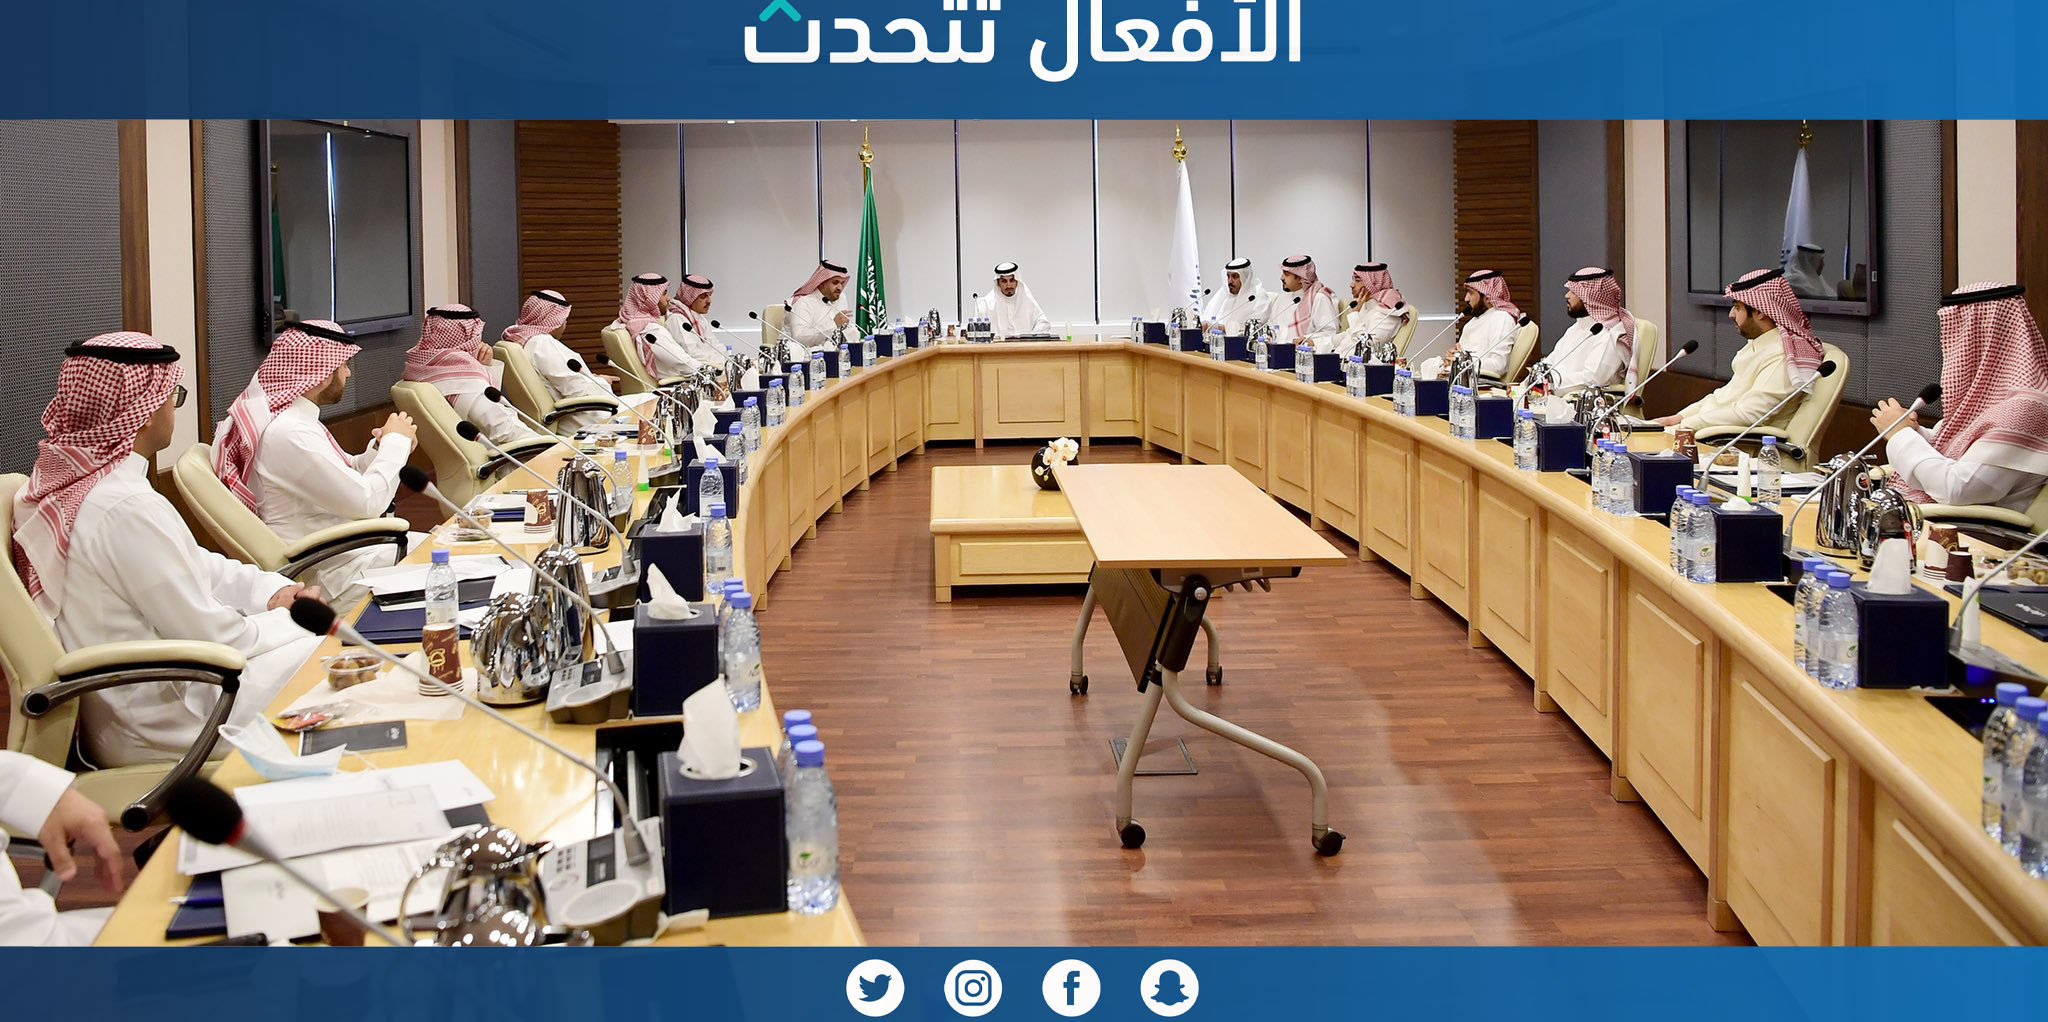 الأجتماع الأول للجنة العقارية بغرفة الرياض واختيار الاستاذ محمد المرشد رئيساً والاستاذ ماجد الشلهوب نائباً